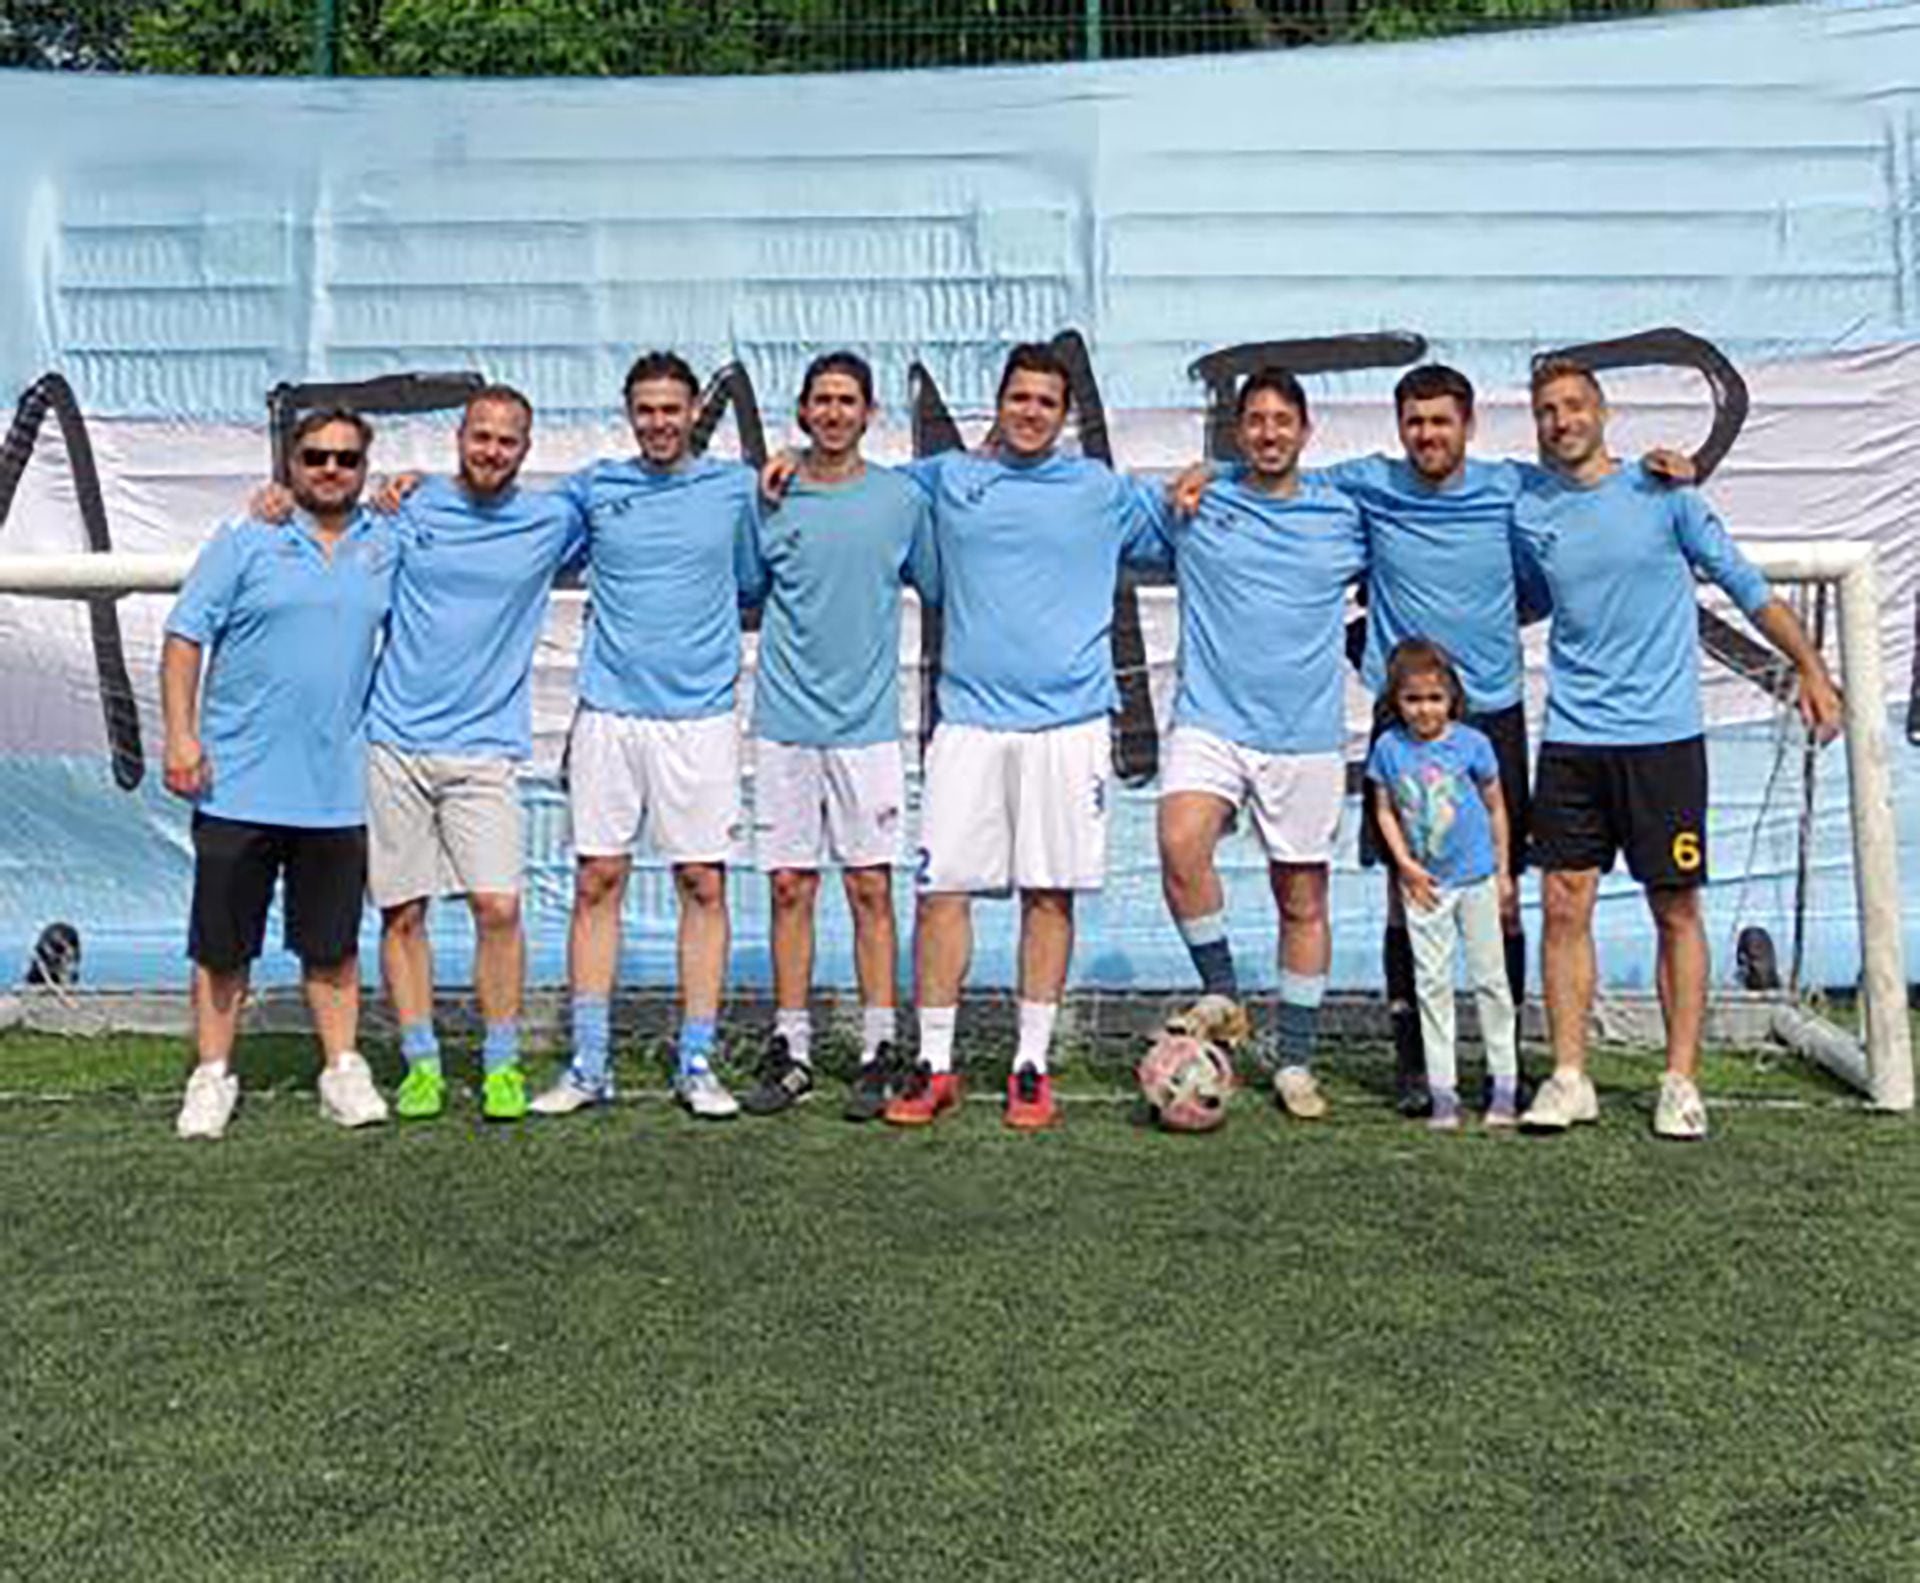 El equipo amateur llamado Malafama FC donde nació la idea de fundar un espacio de argentinidad. Entre los fundadores también hay una mujer: Agustina, fotógrafa, comunicadora social y creadora de la tipografía de la fiesta